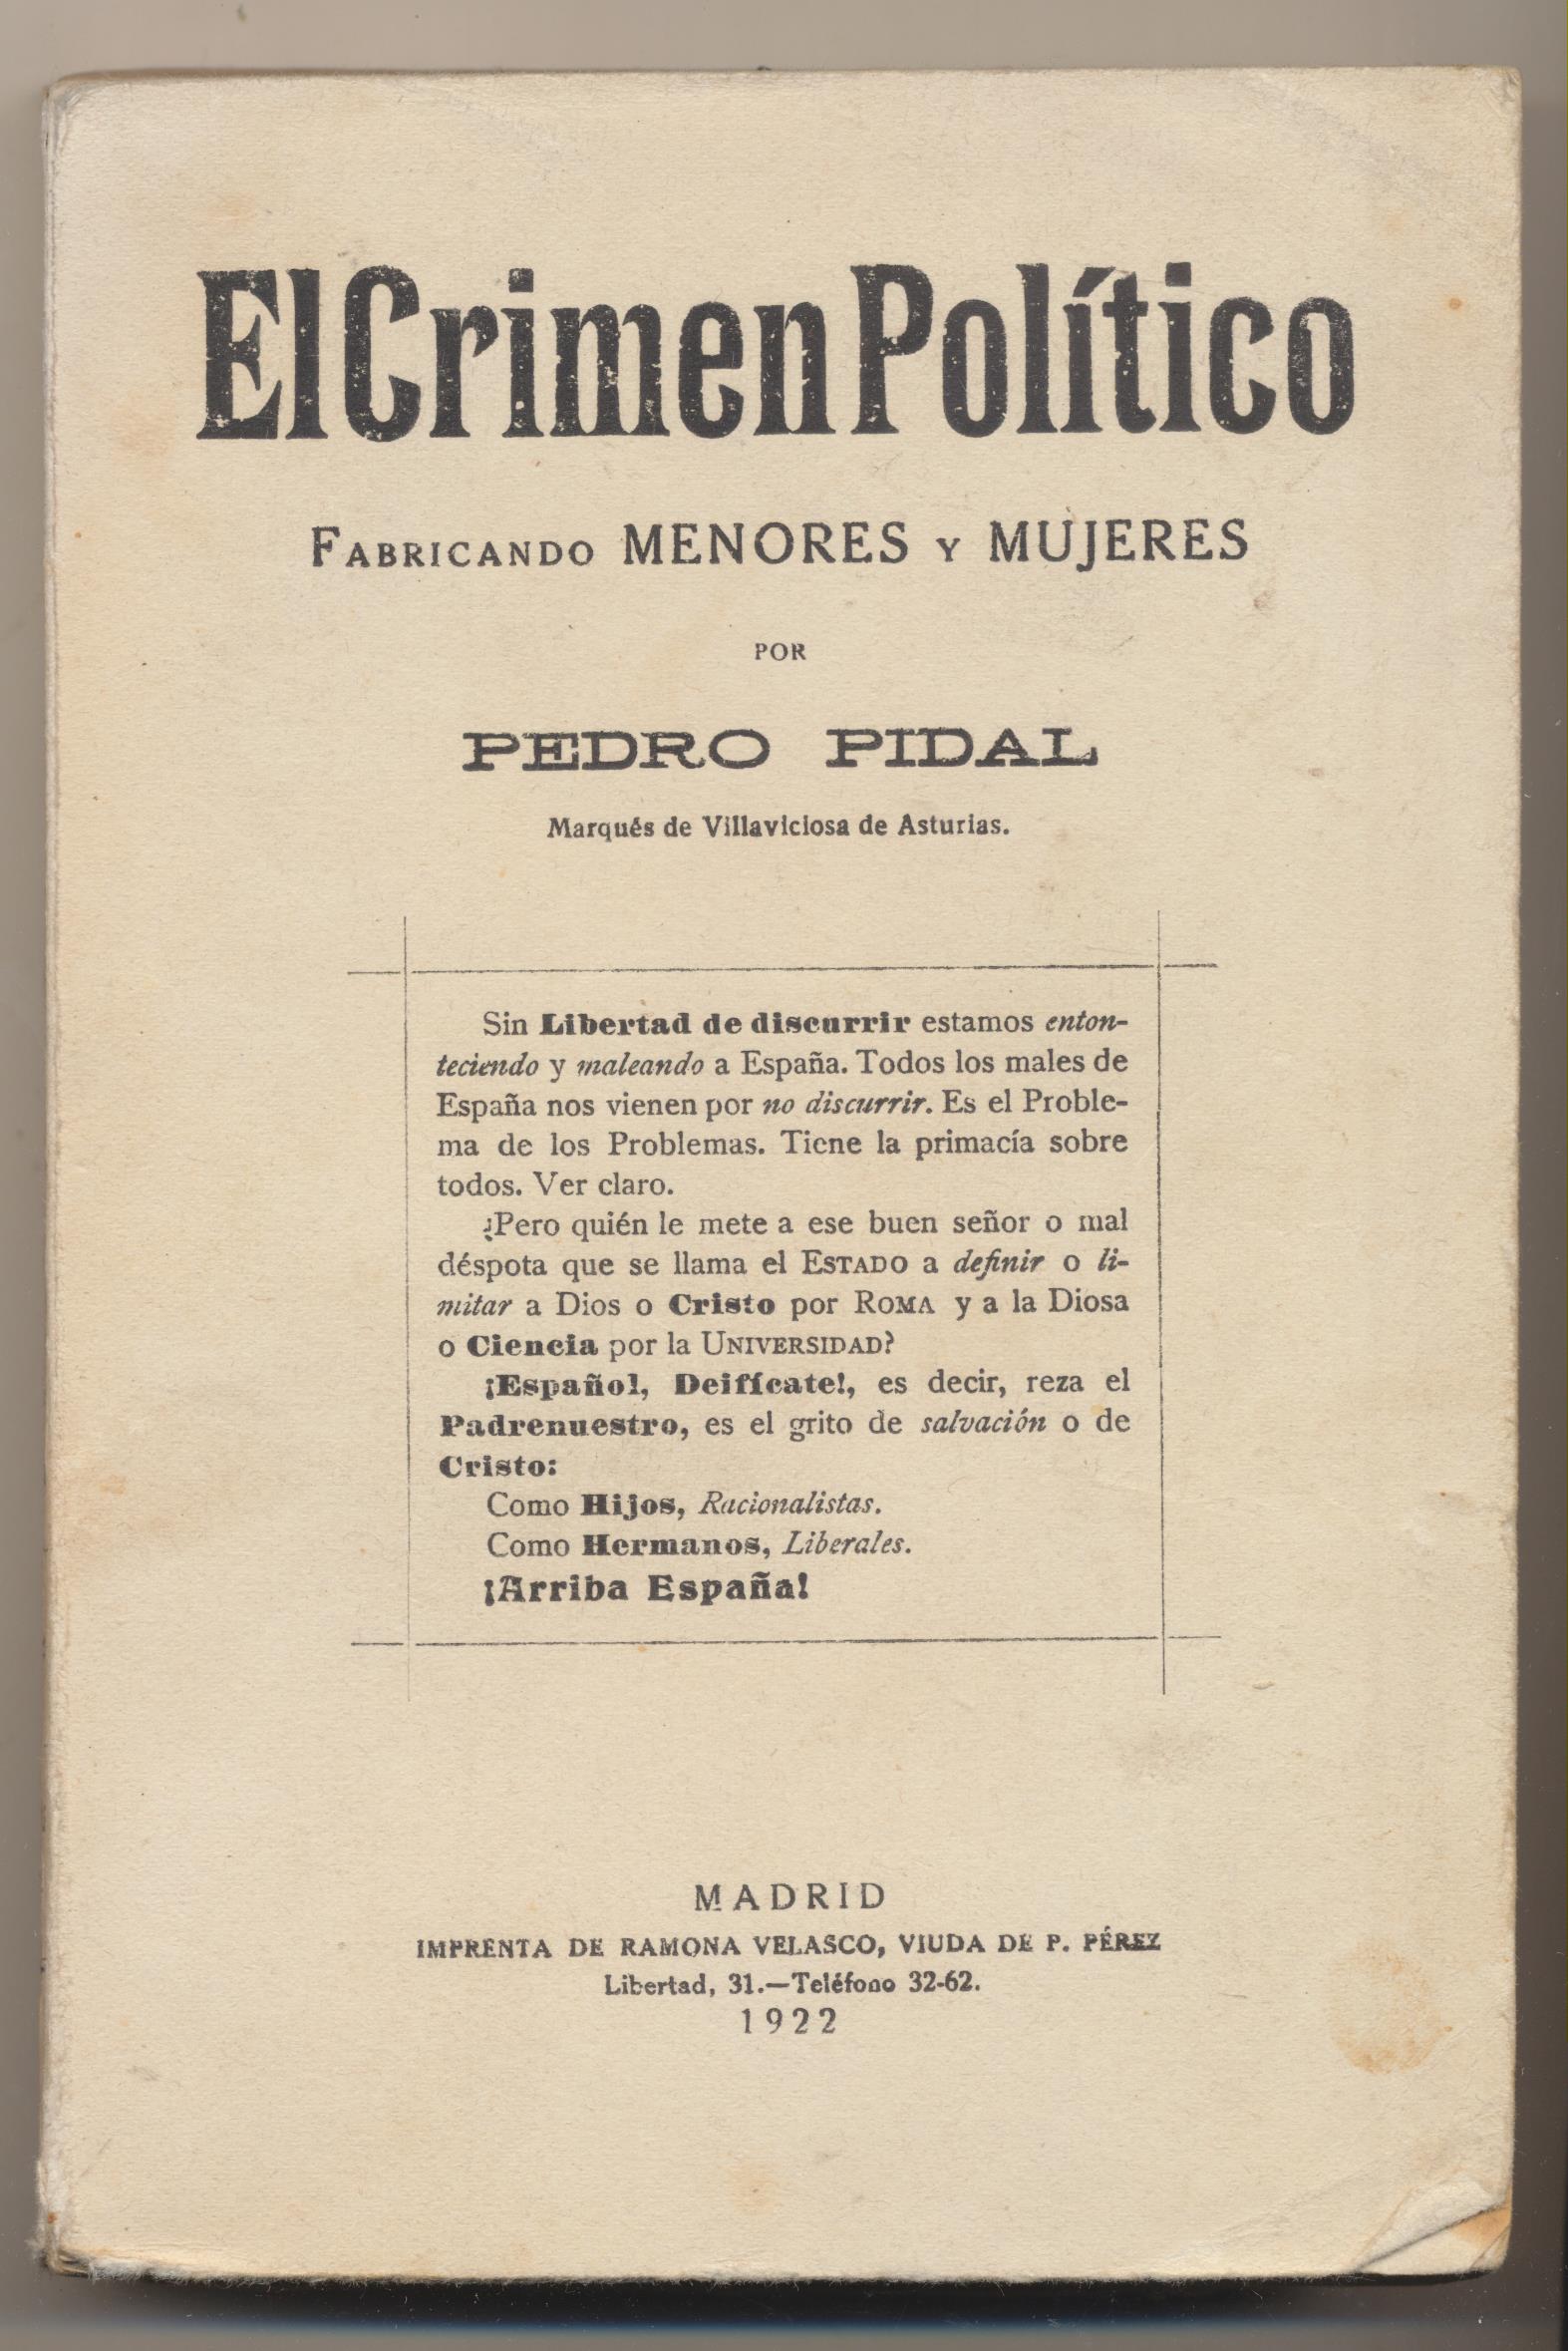 Pedro Pidal. El Crimen político, Fabricando Menores y Mujeres. Madrid 1922